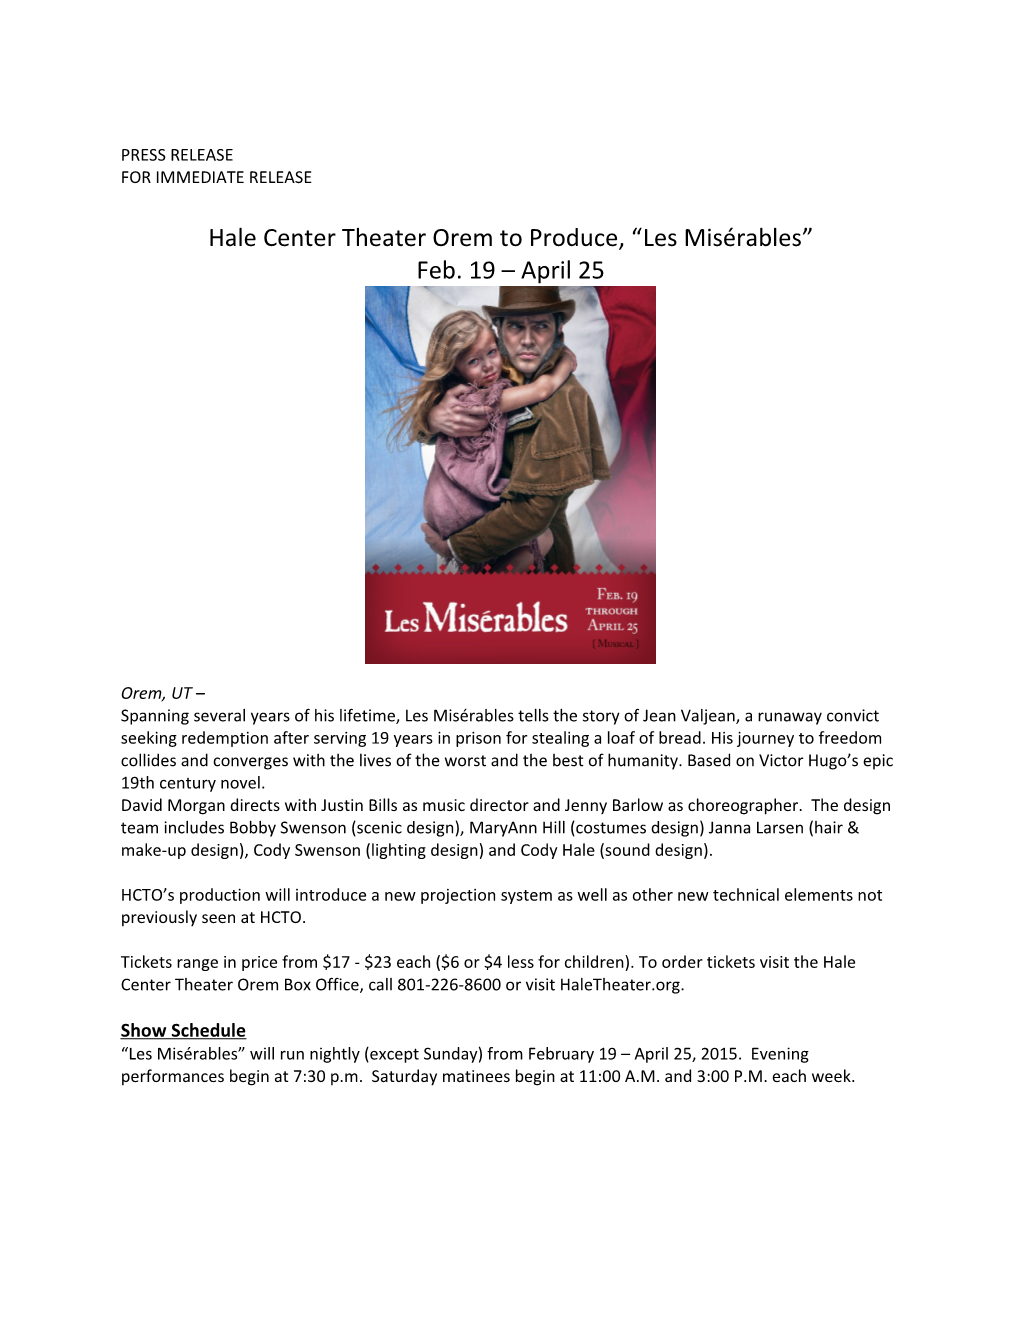 Hale Center Theater Orem to Produce, Les Misérables